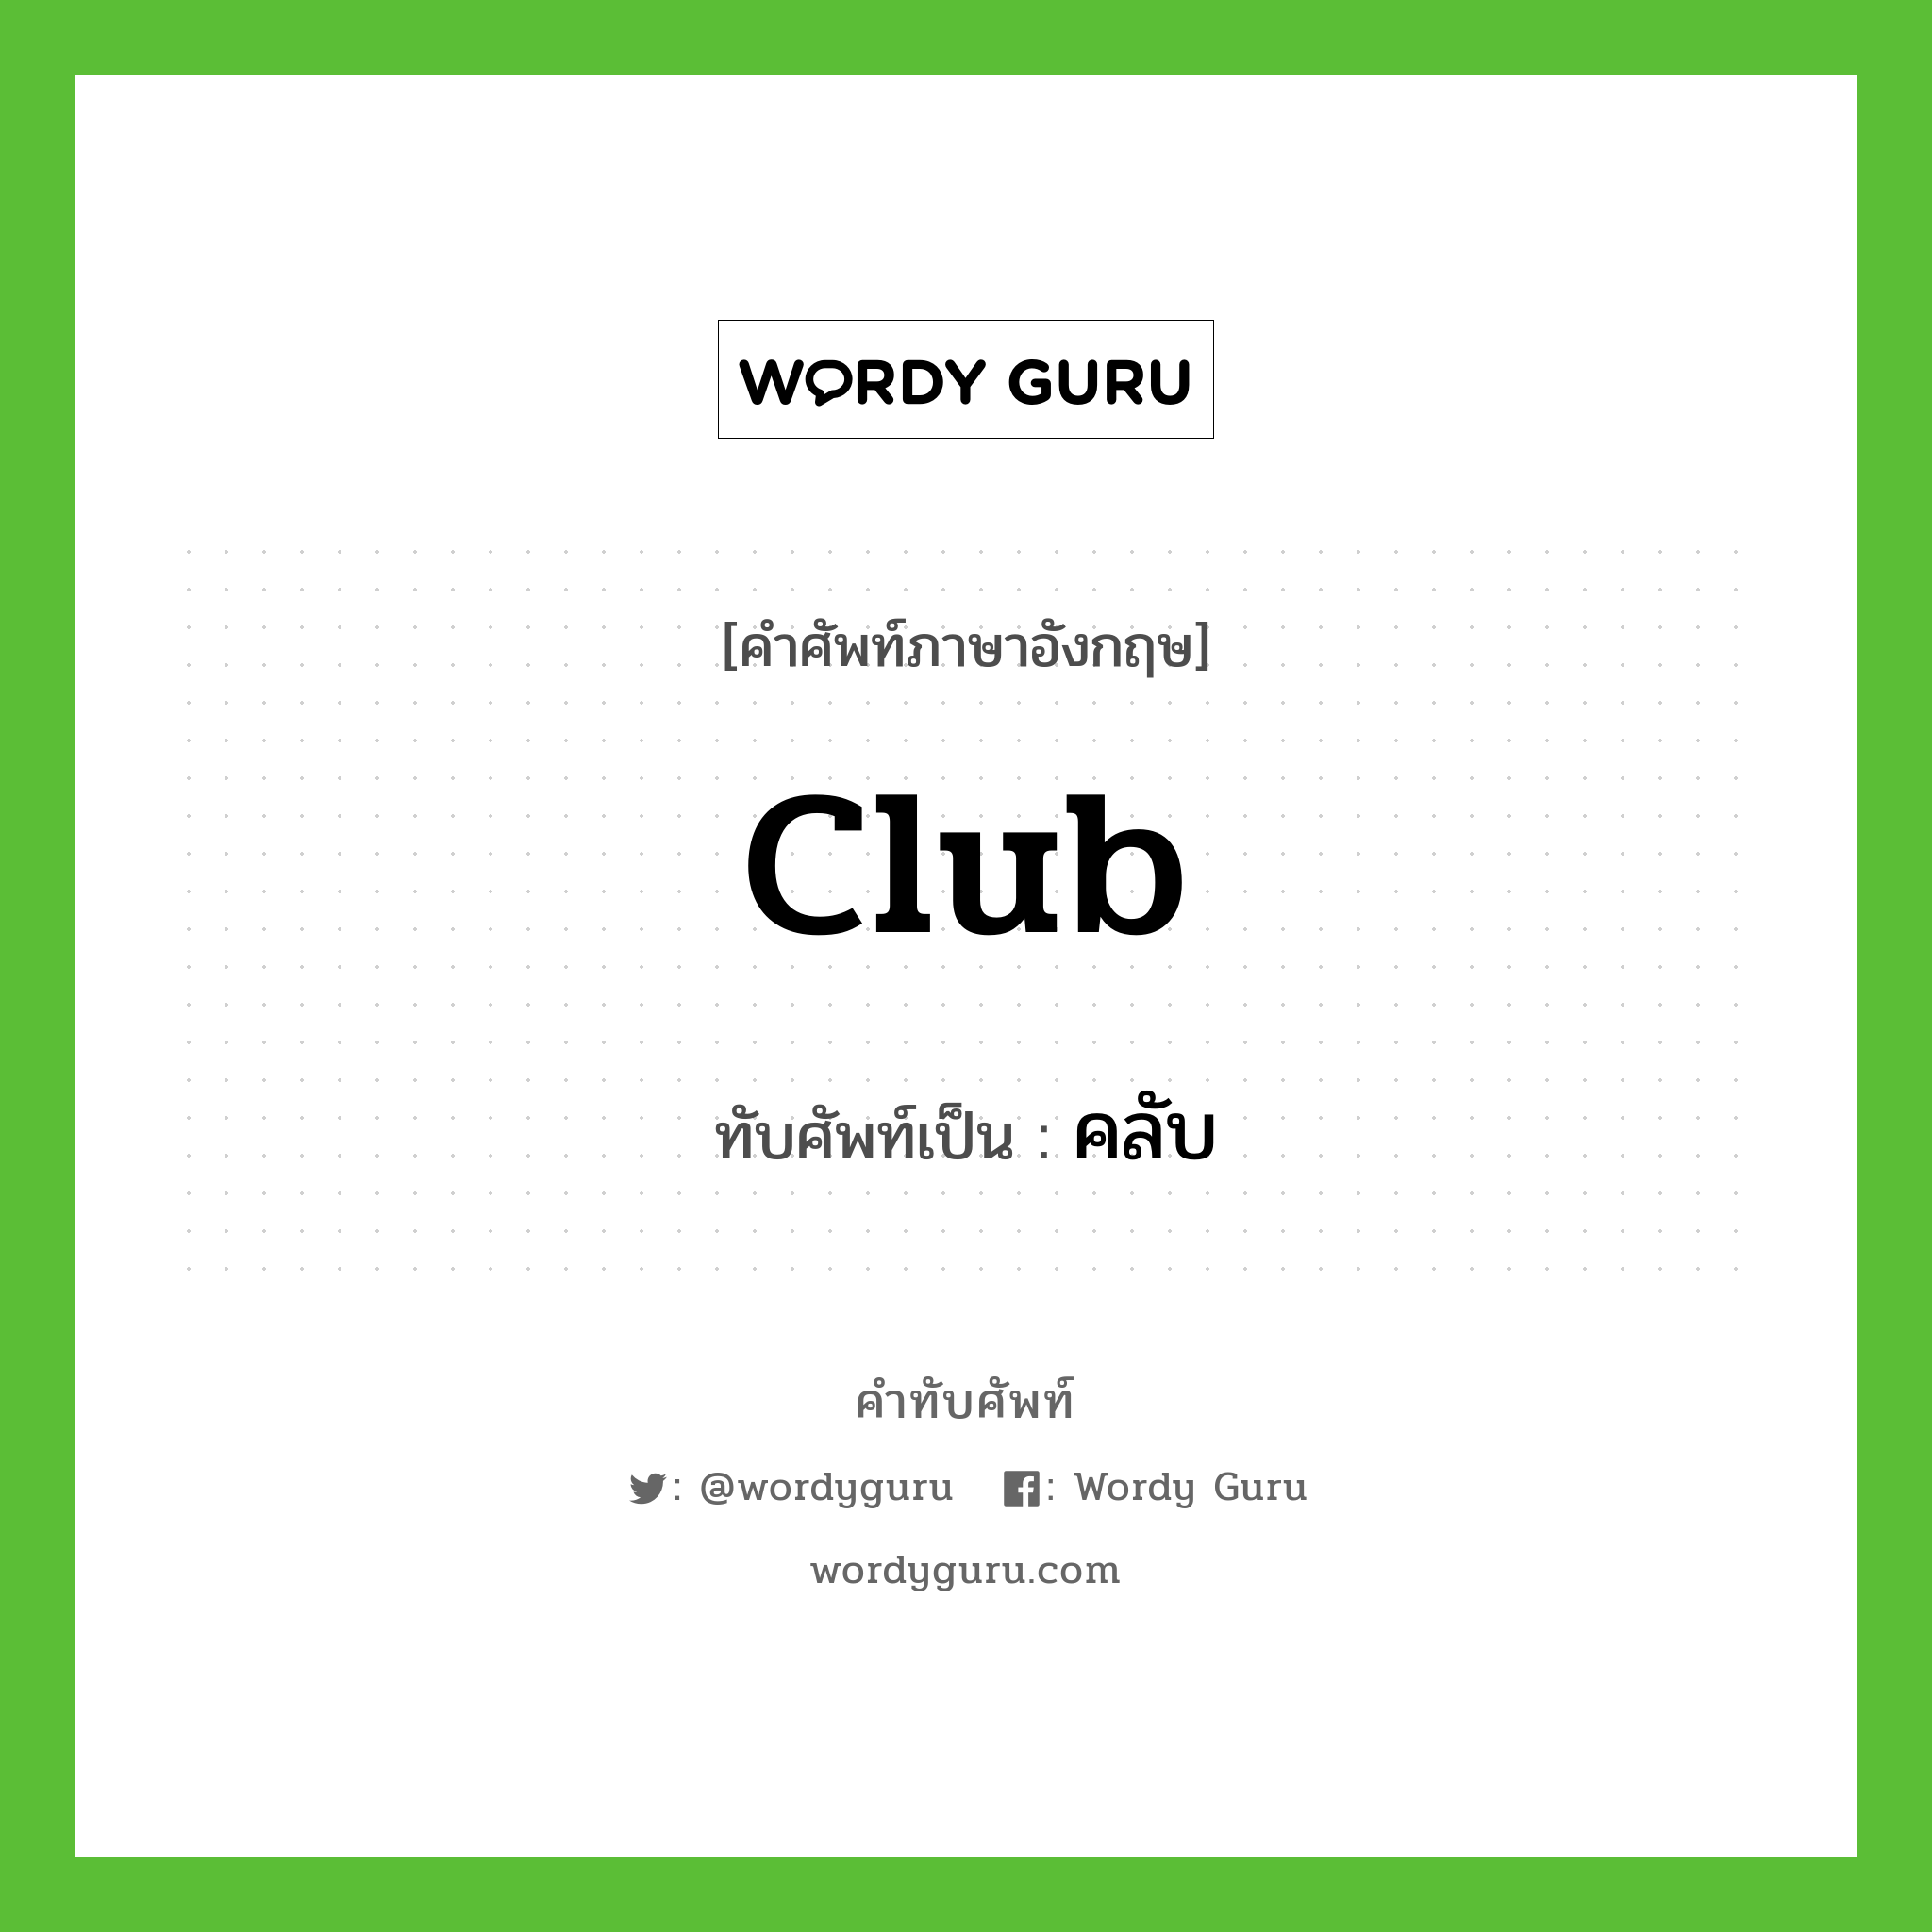 club เขียนเป็นคำไทยว่าอะไร?, คำศัพท์ภาษาอังกฤษ club ทับศัพท์เป็น คลับ